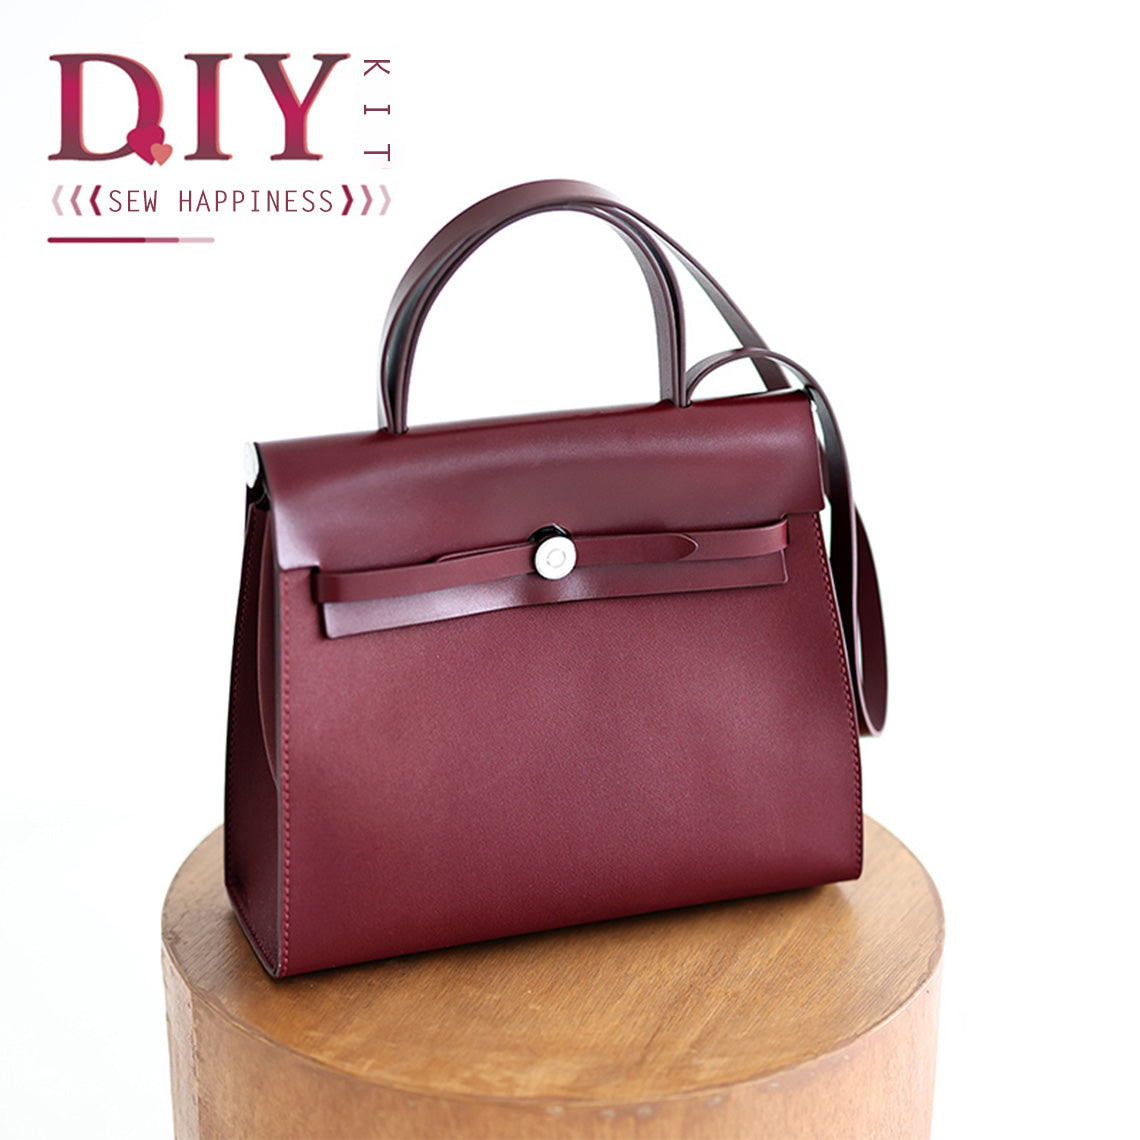 Von Leder inspirierte Her-Tasche-Reißverschlusstasche-DIY-Kit – Extra 20 % Preisnachlass an der Kasse